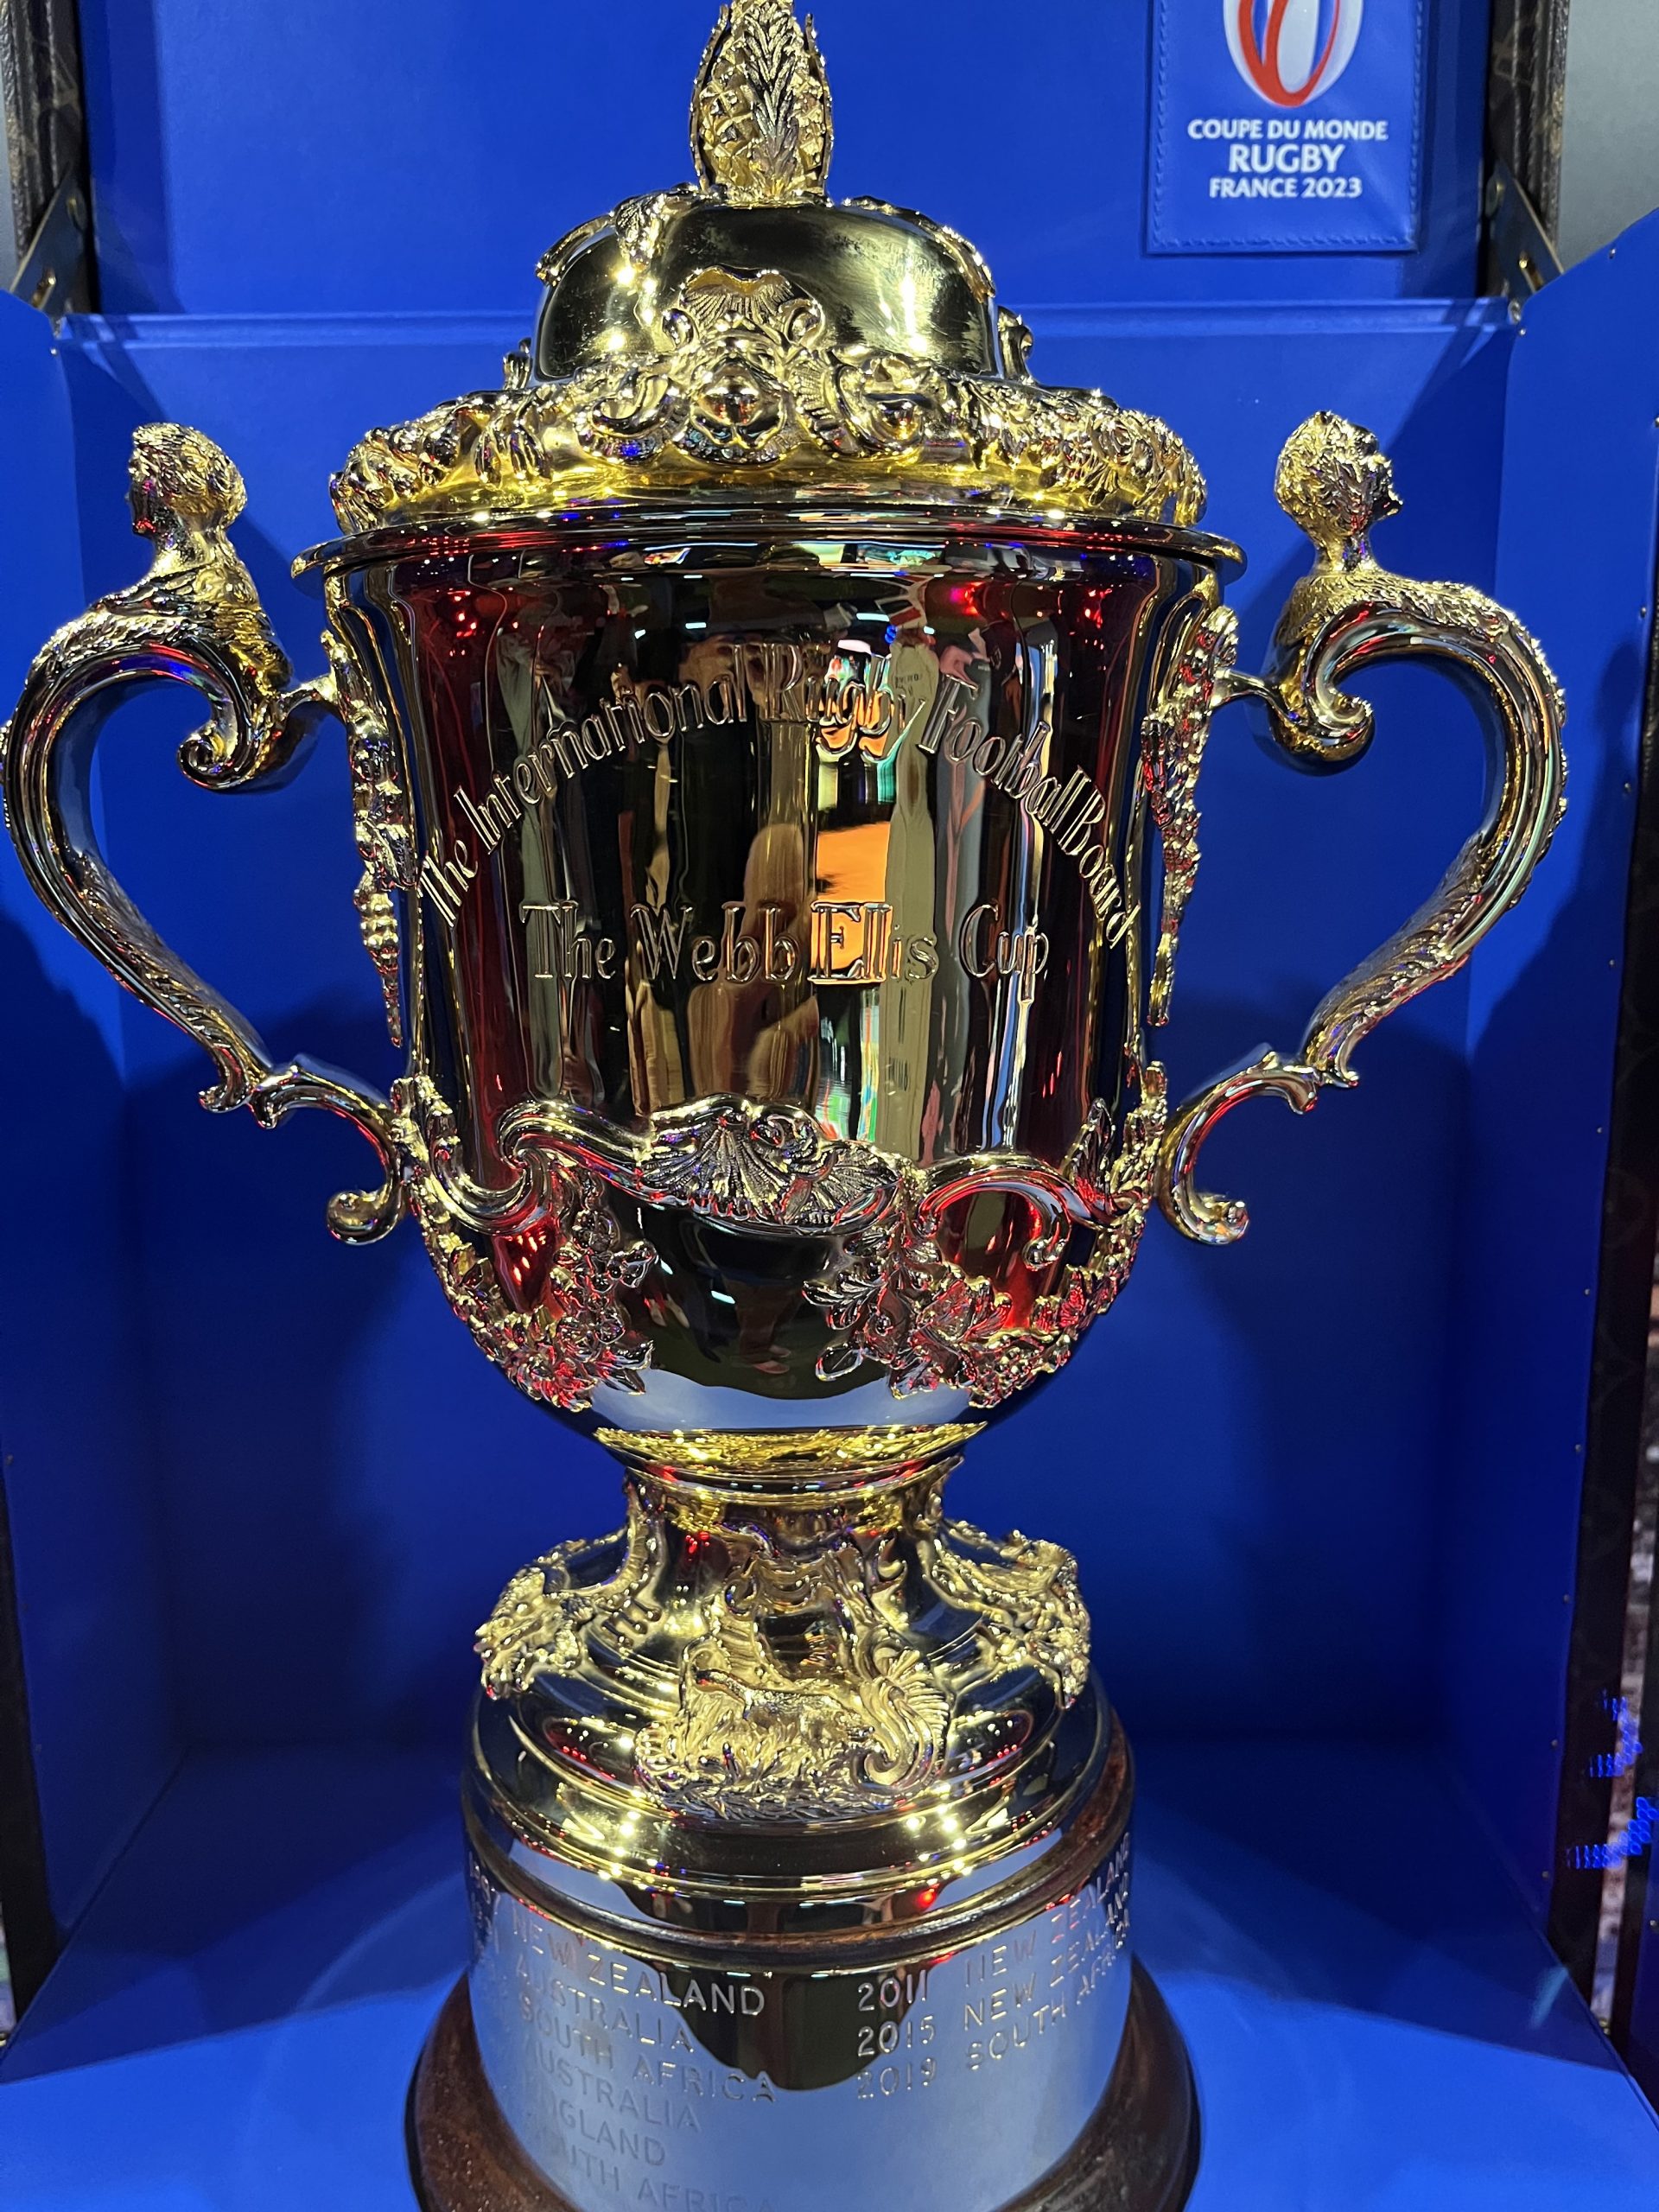 Coupe du monde de rugby, J-100 : les petits secrets d'un trophée